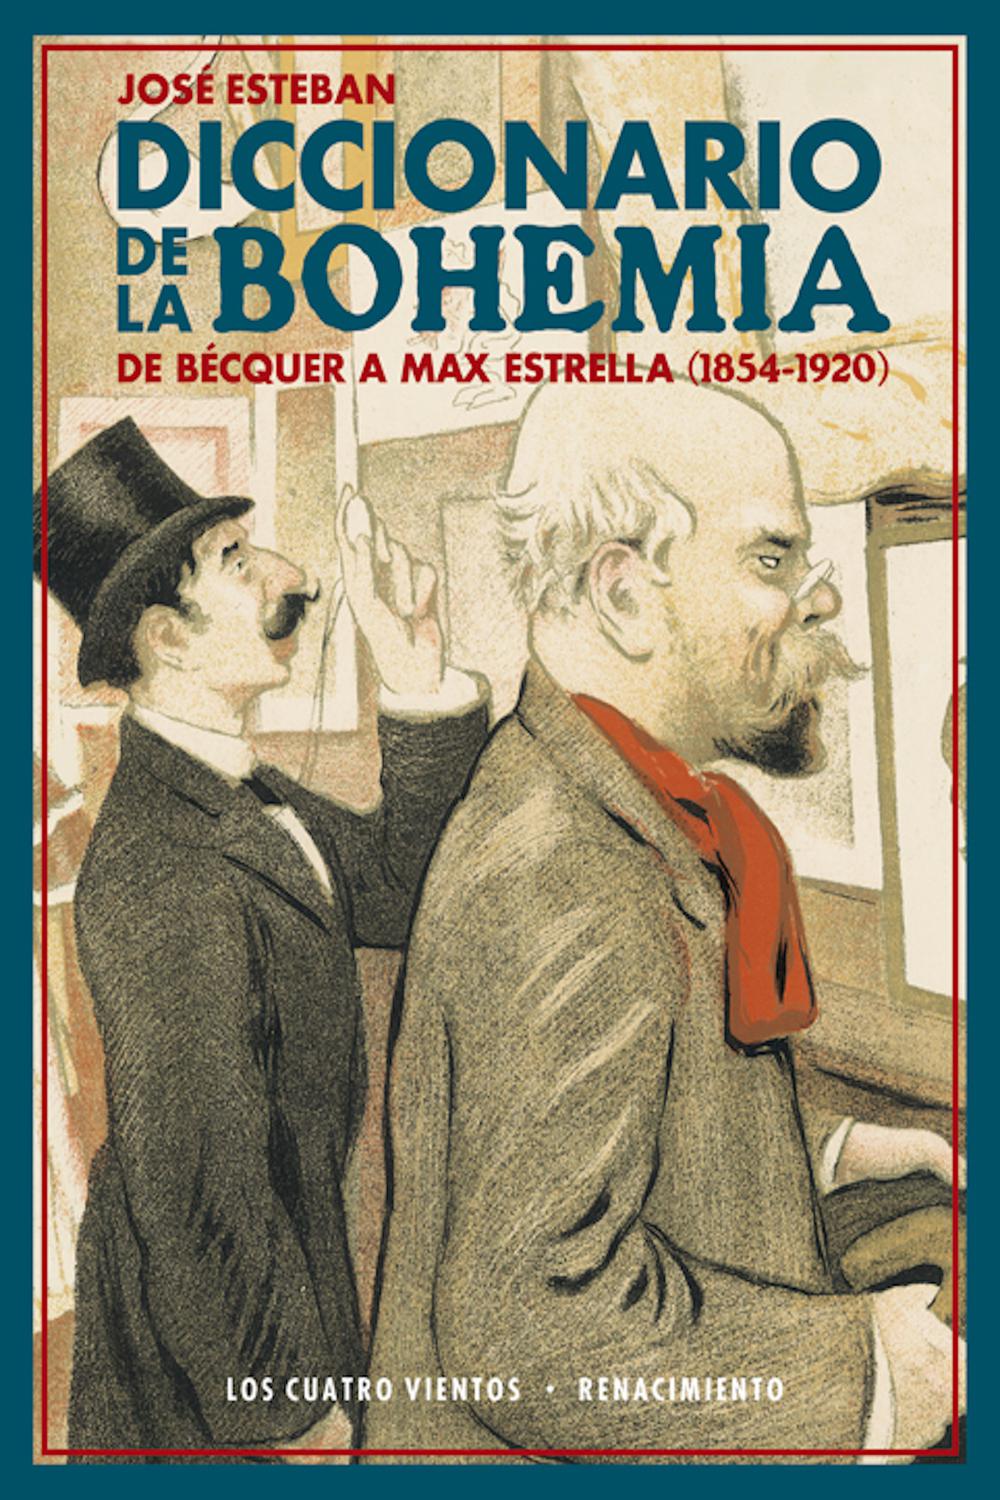 Diccionario de la bohemia - José Esteban